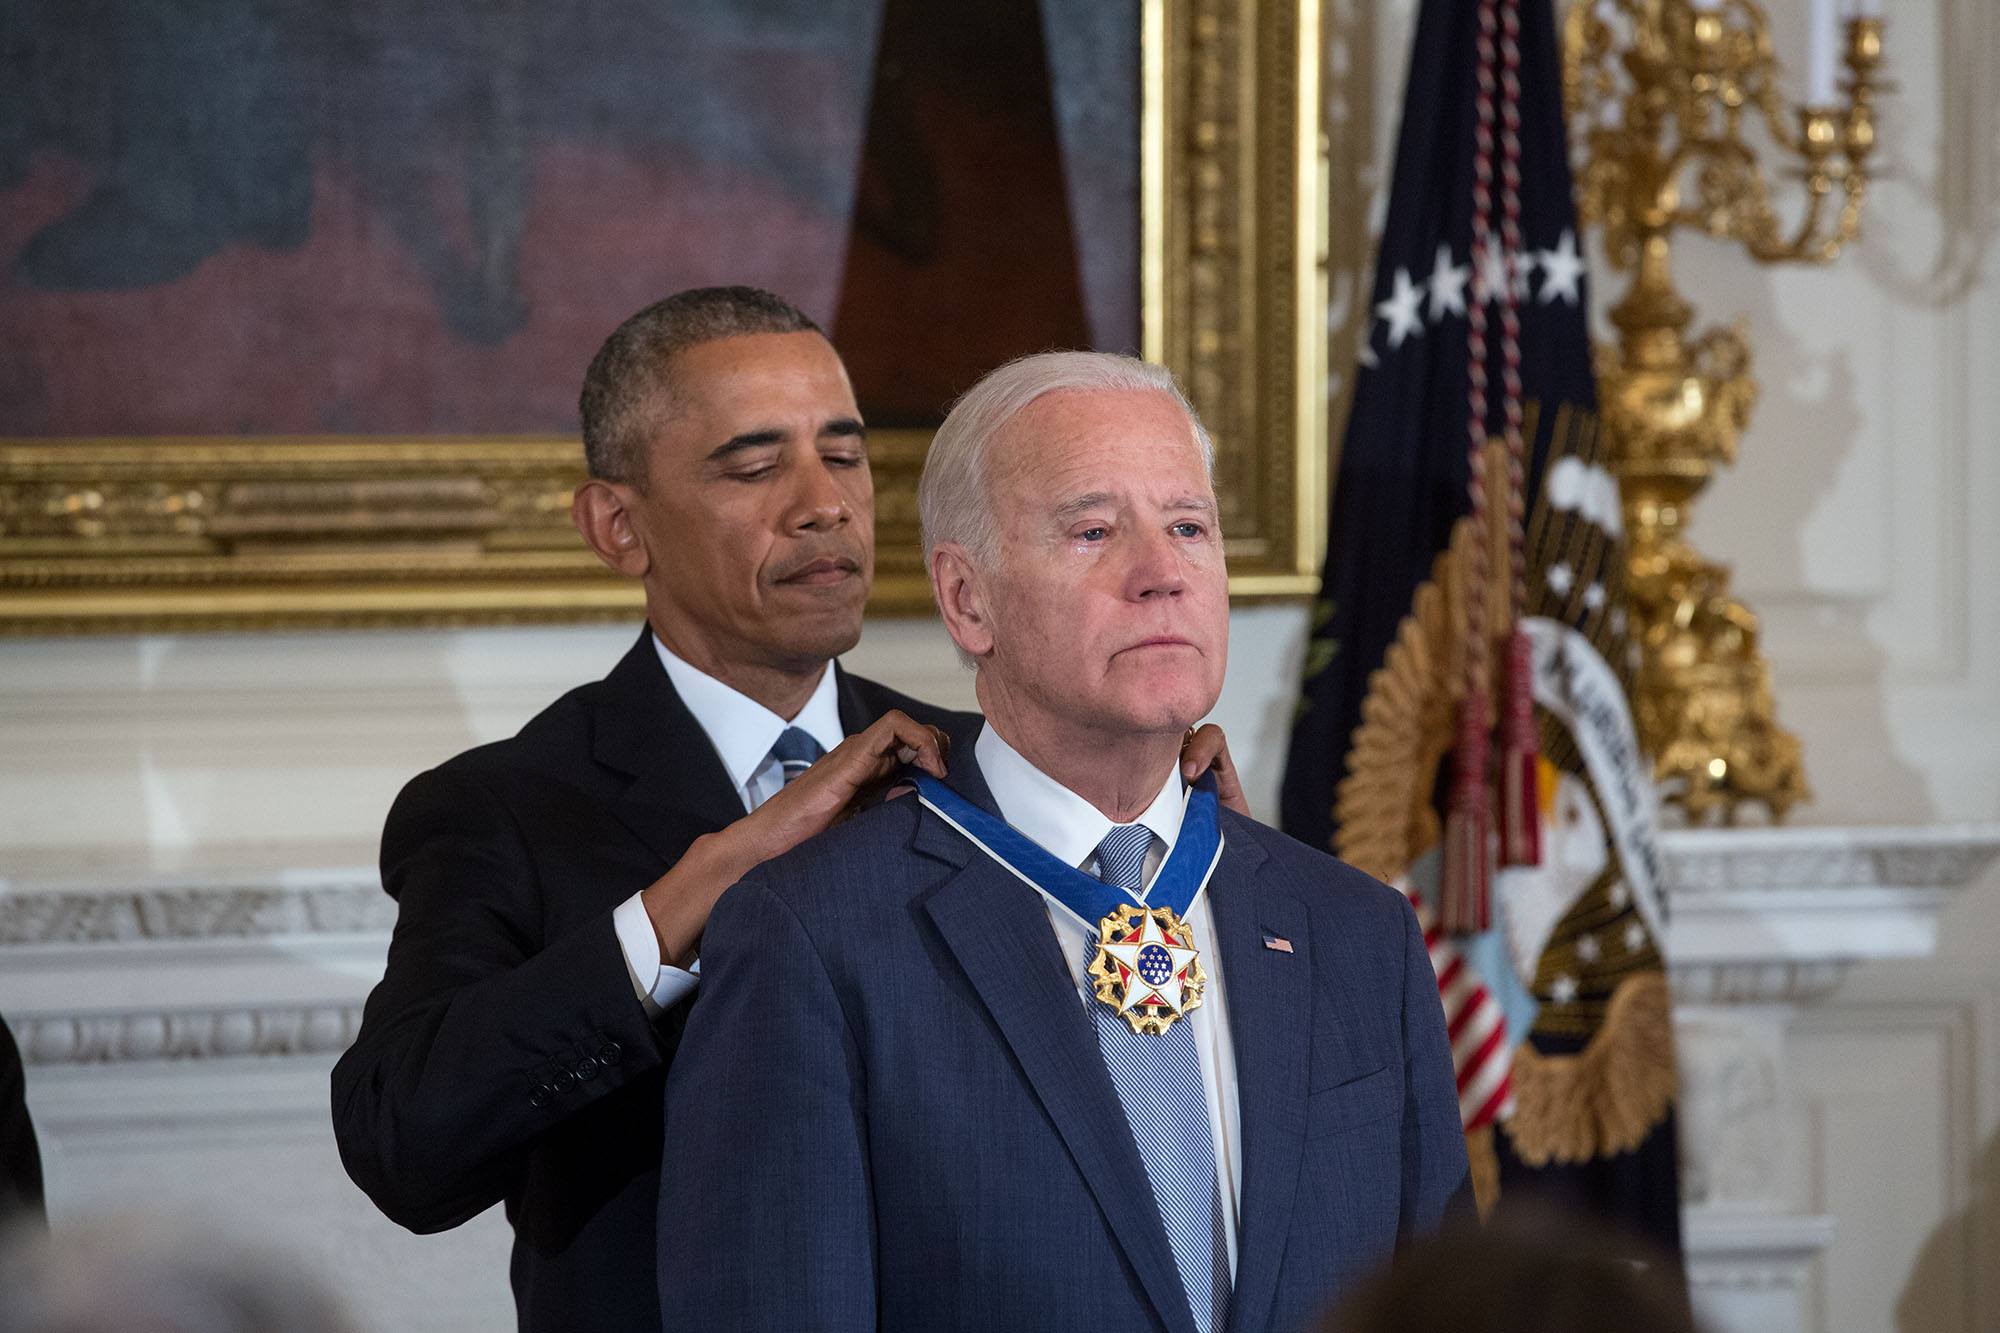 โอบามามอบเหรียญอิสรภาพประธานาธิบดีให้กับไบเดน ที่ทำเนียบขาว เมื่อ 12 มกราคม 2560 / Official White House Photo by Pete Souza